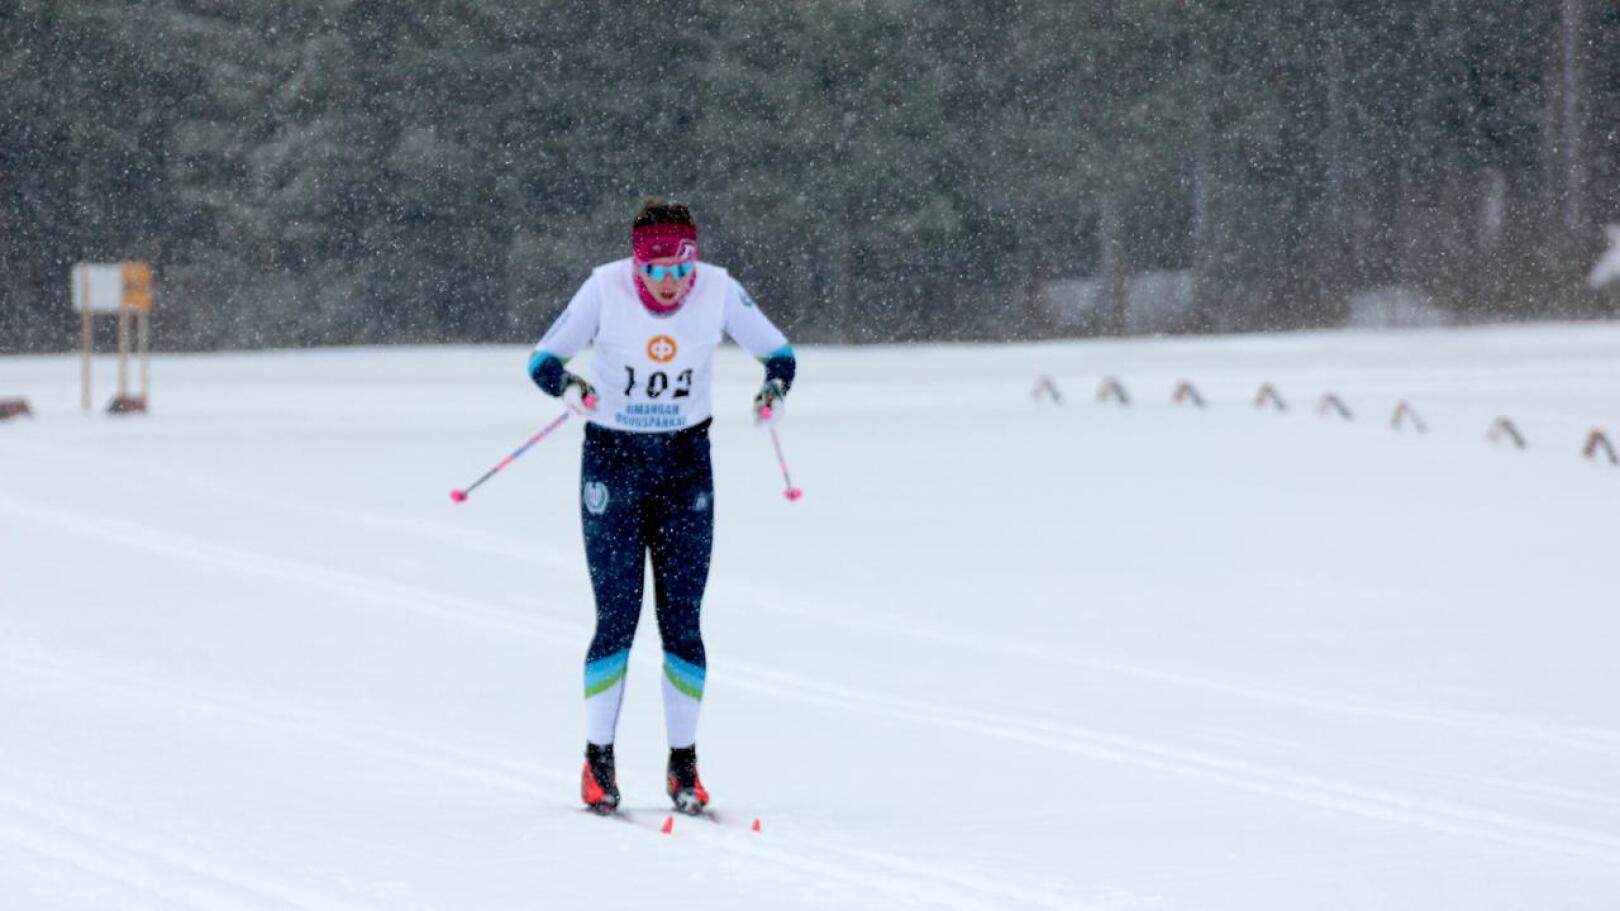 Himangan Urheilijoiden Assi Hakala oli naisista nopein Kalajoen Hiihtomajan maastossa.